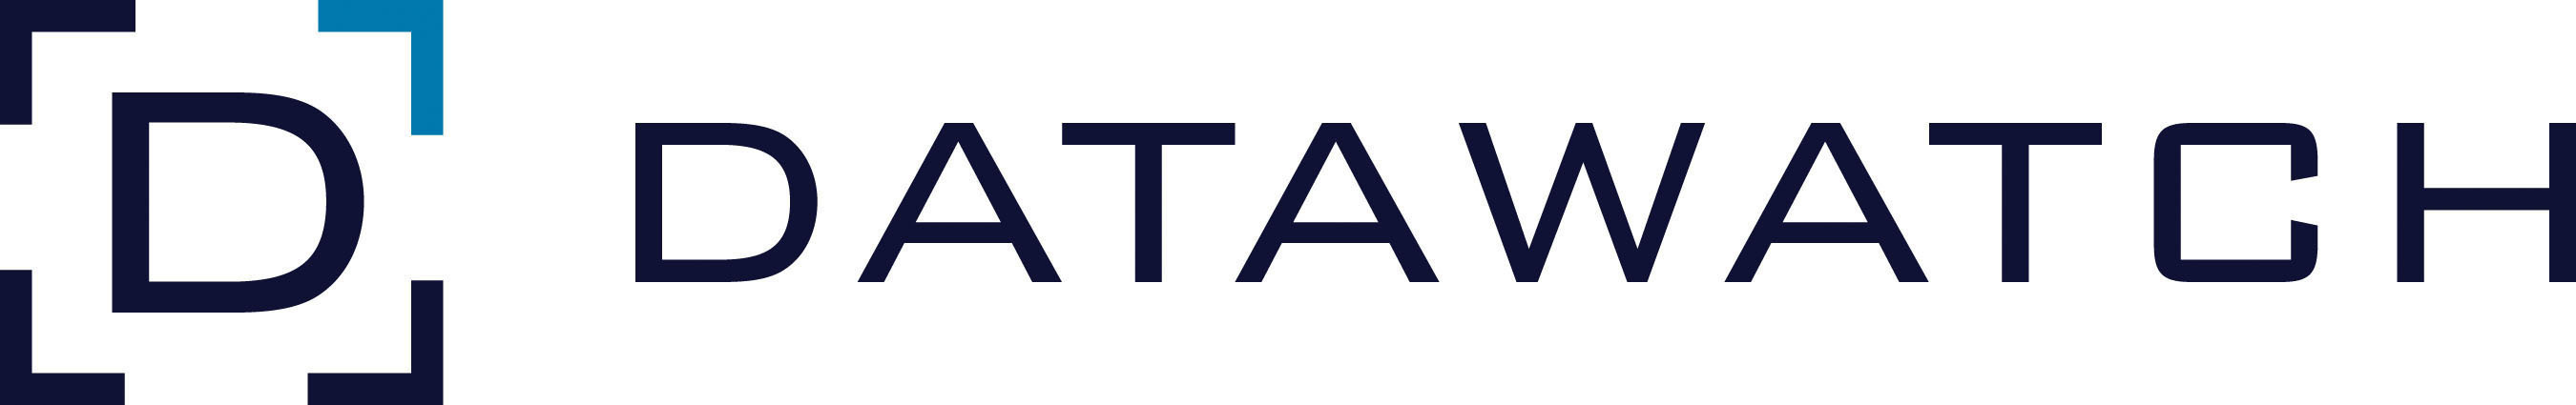 Datawatch logo. (PRNewsFoto/Datawatch Corporation)